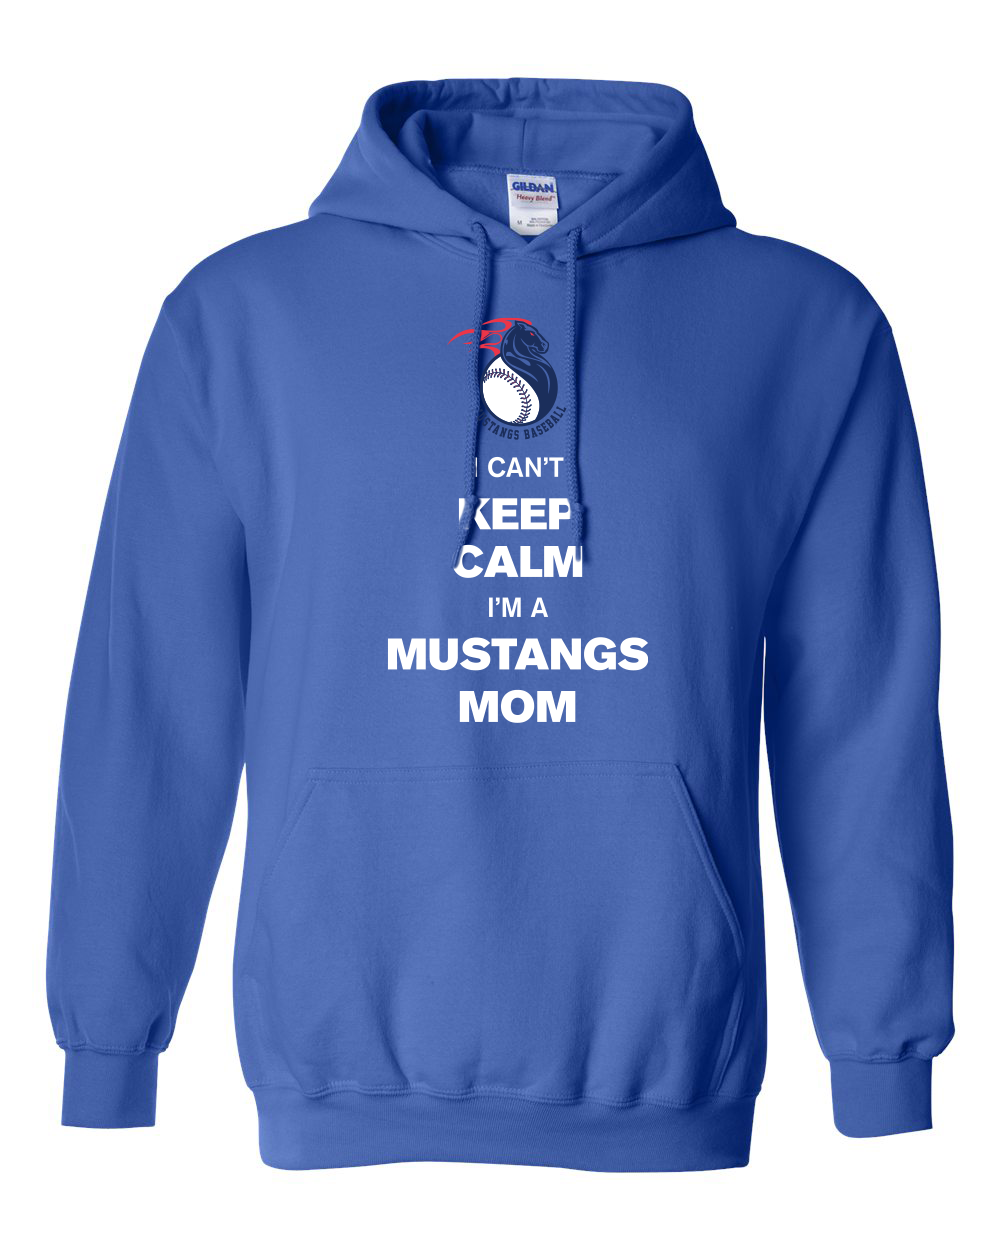 Keep Calm Mustangs Mom Pullover Hoodie